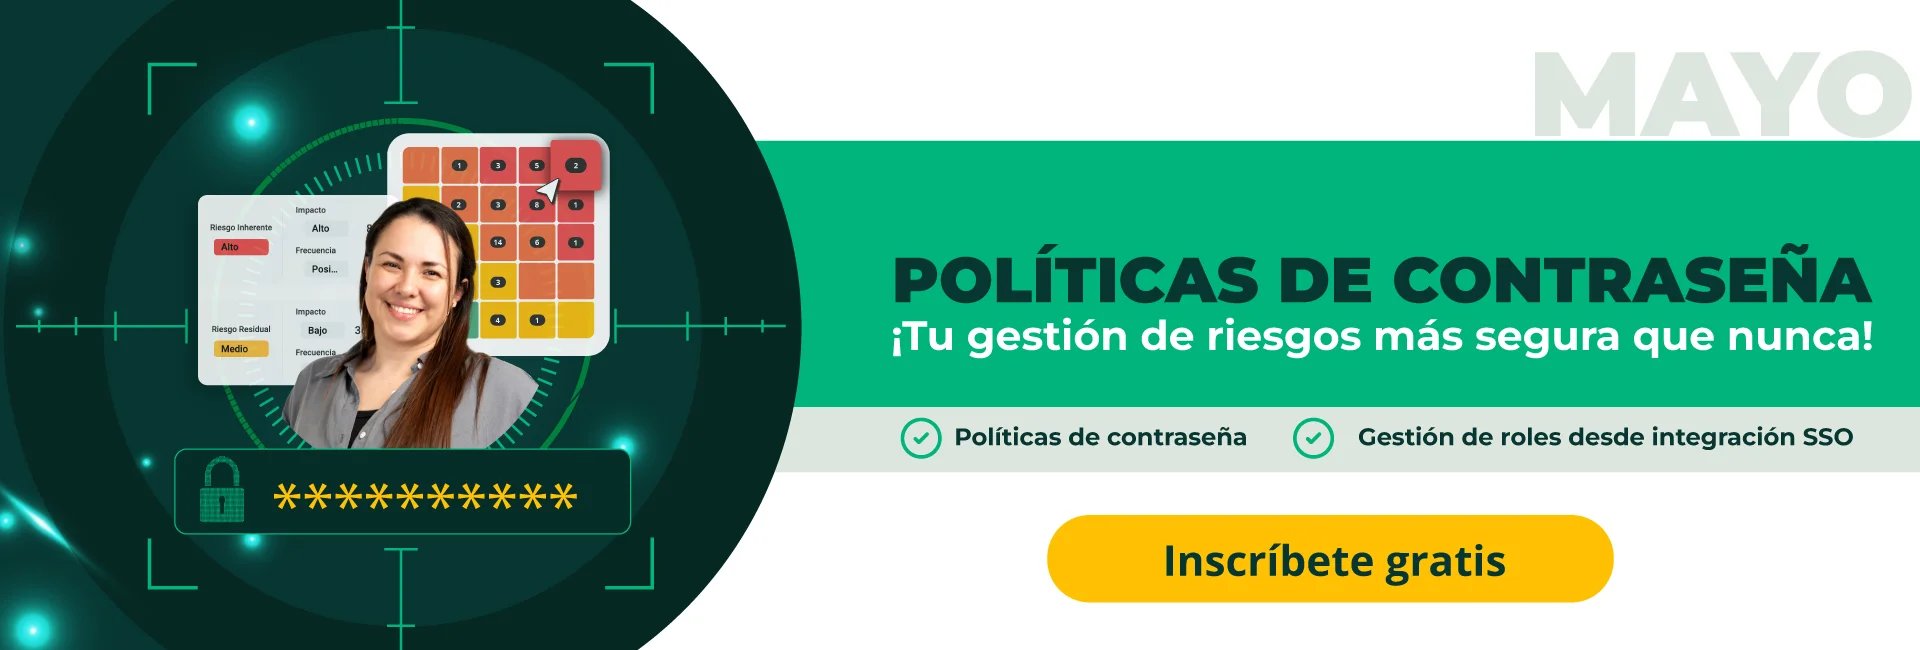 Banner-web-politicas-de-contrasena-webinar-Pirani